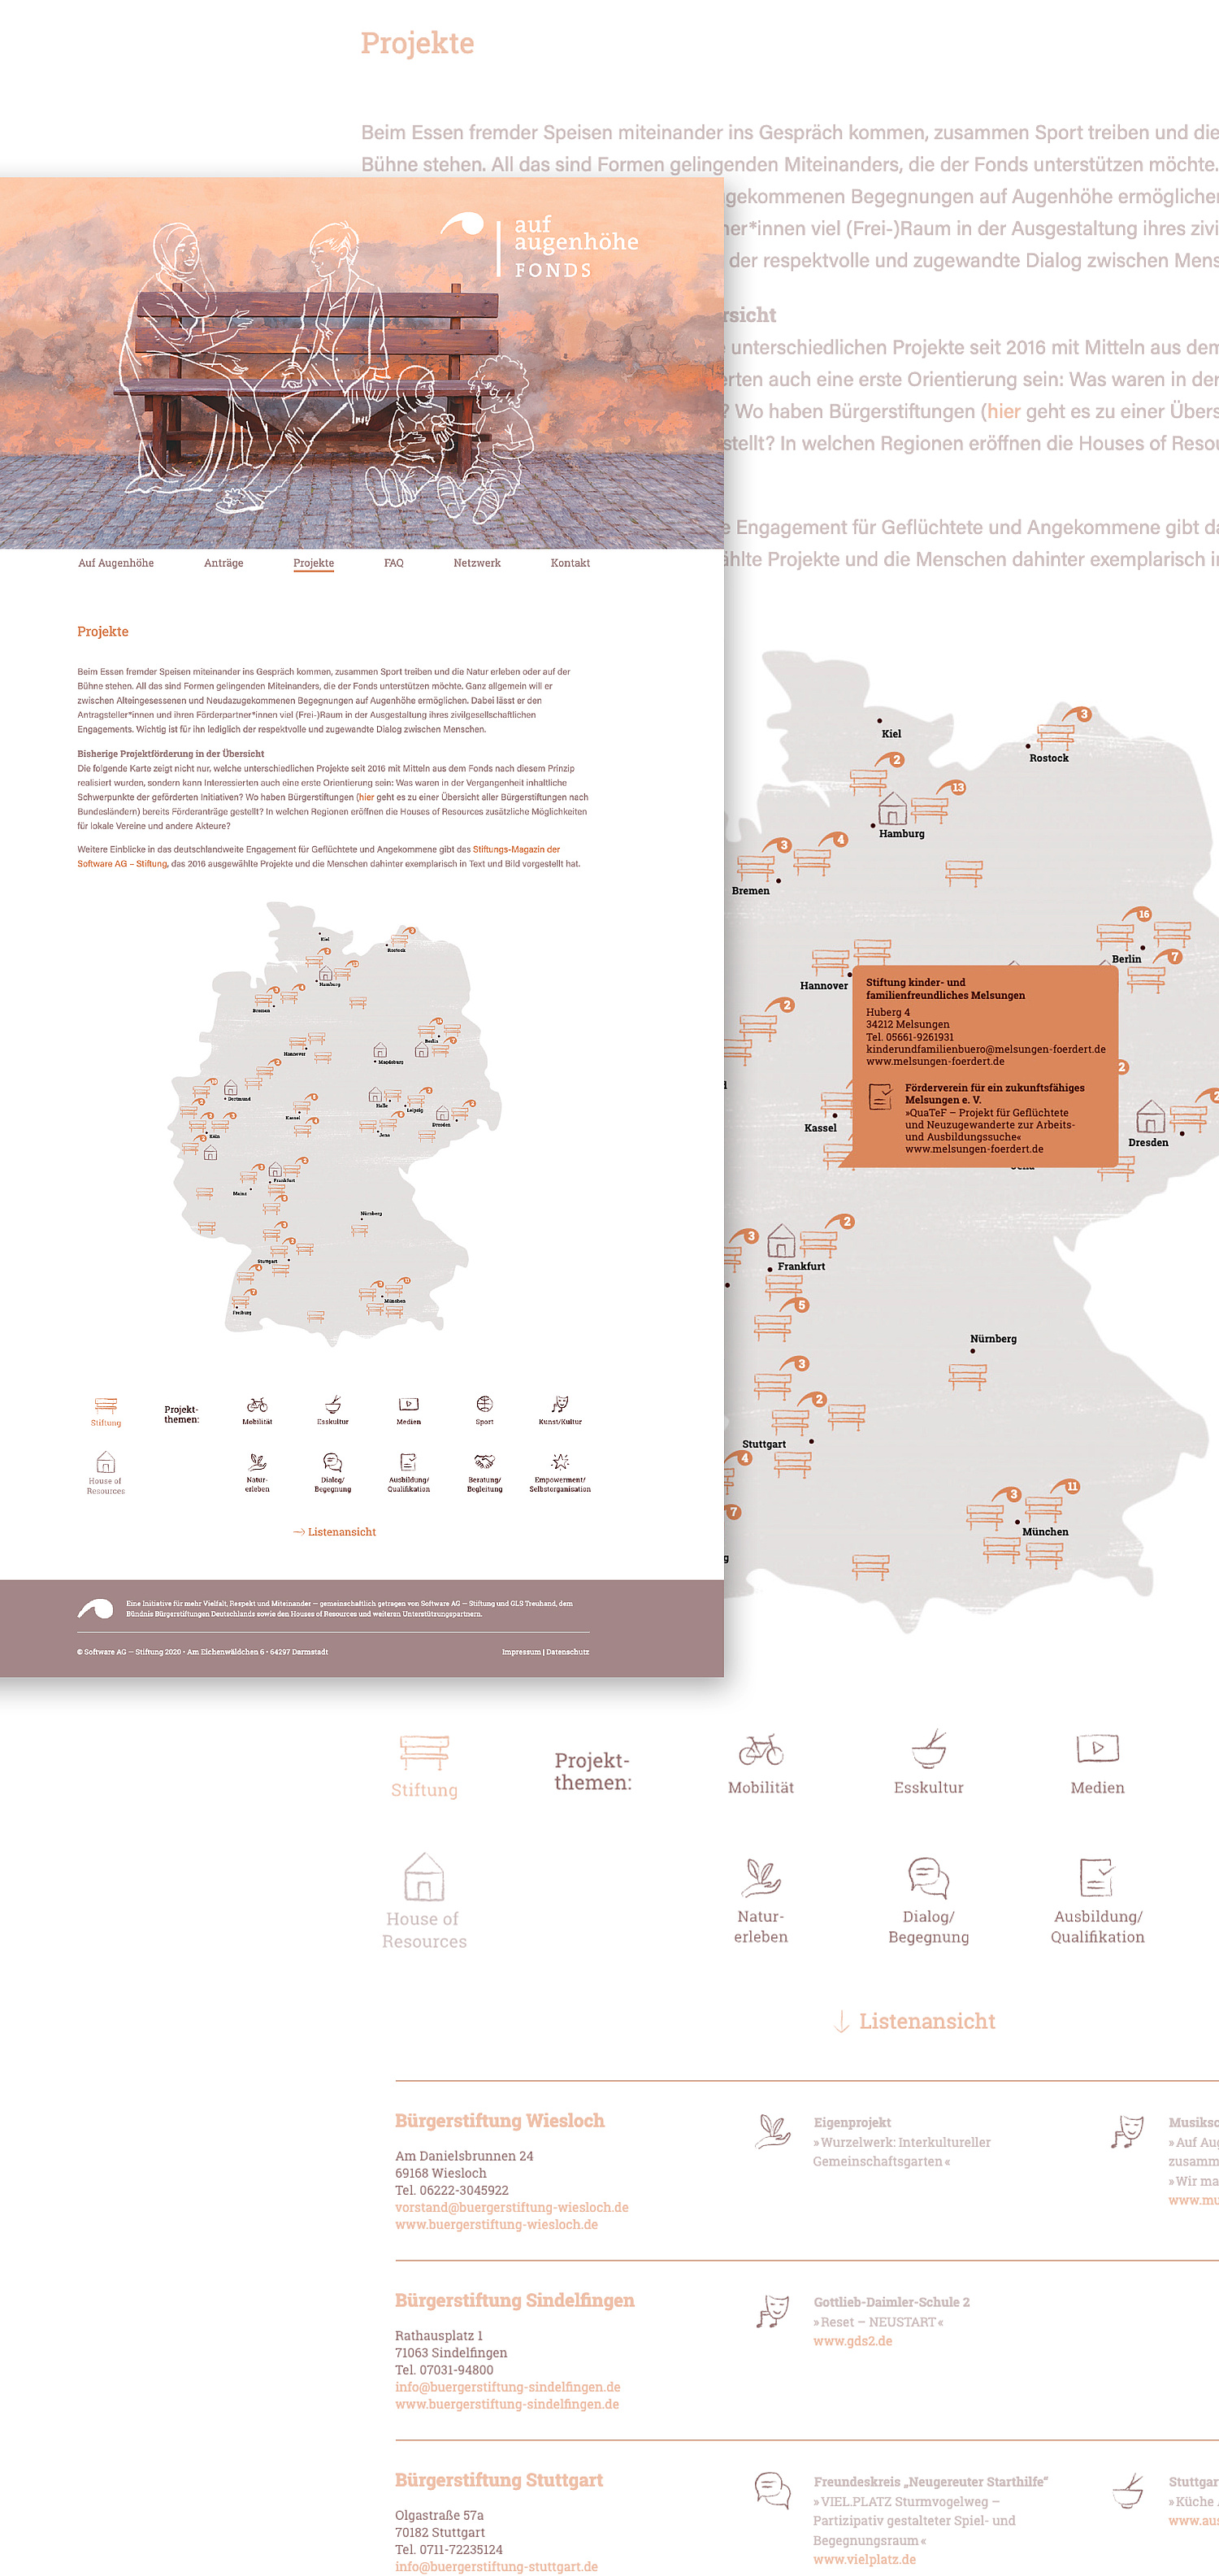 Eine Deutschlandkarte zeigt alle bisher geförderten Projekten mit einem Steckbrief zu den Bürgerstiftungen. Optional kann der Nutzer in einer Listenansicht wechseln.   
 (© Papenfuss | Atelier)